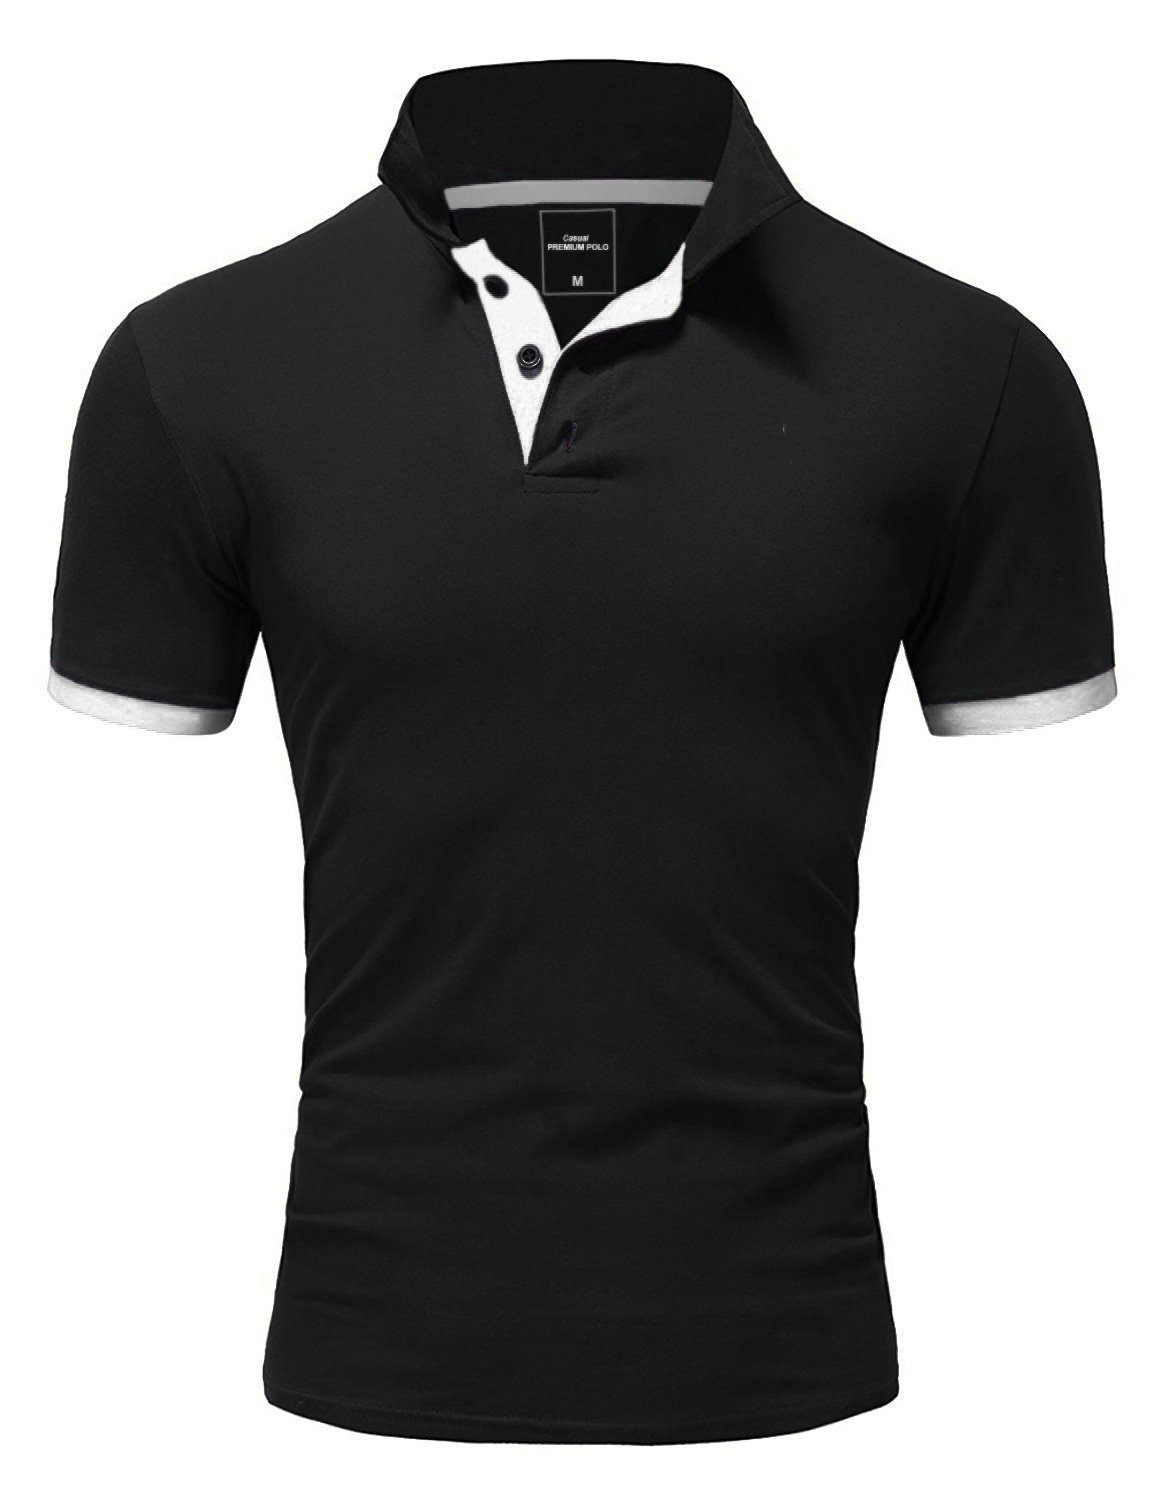 REPUBLIX Poloshirt RONALD Herren Shirt mit kontrastierenden Akzenten, in Piqué Qualität Schwarz/Weiß